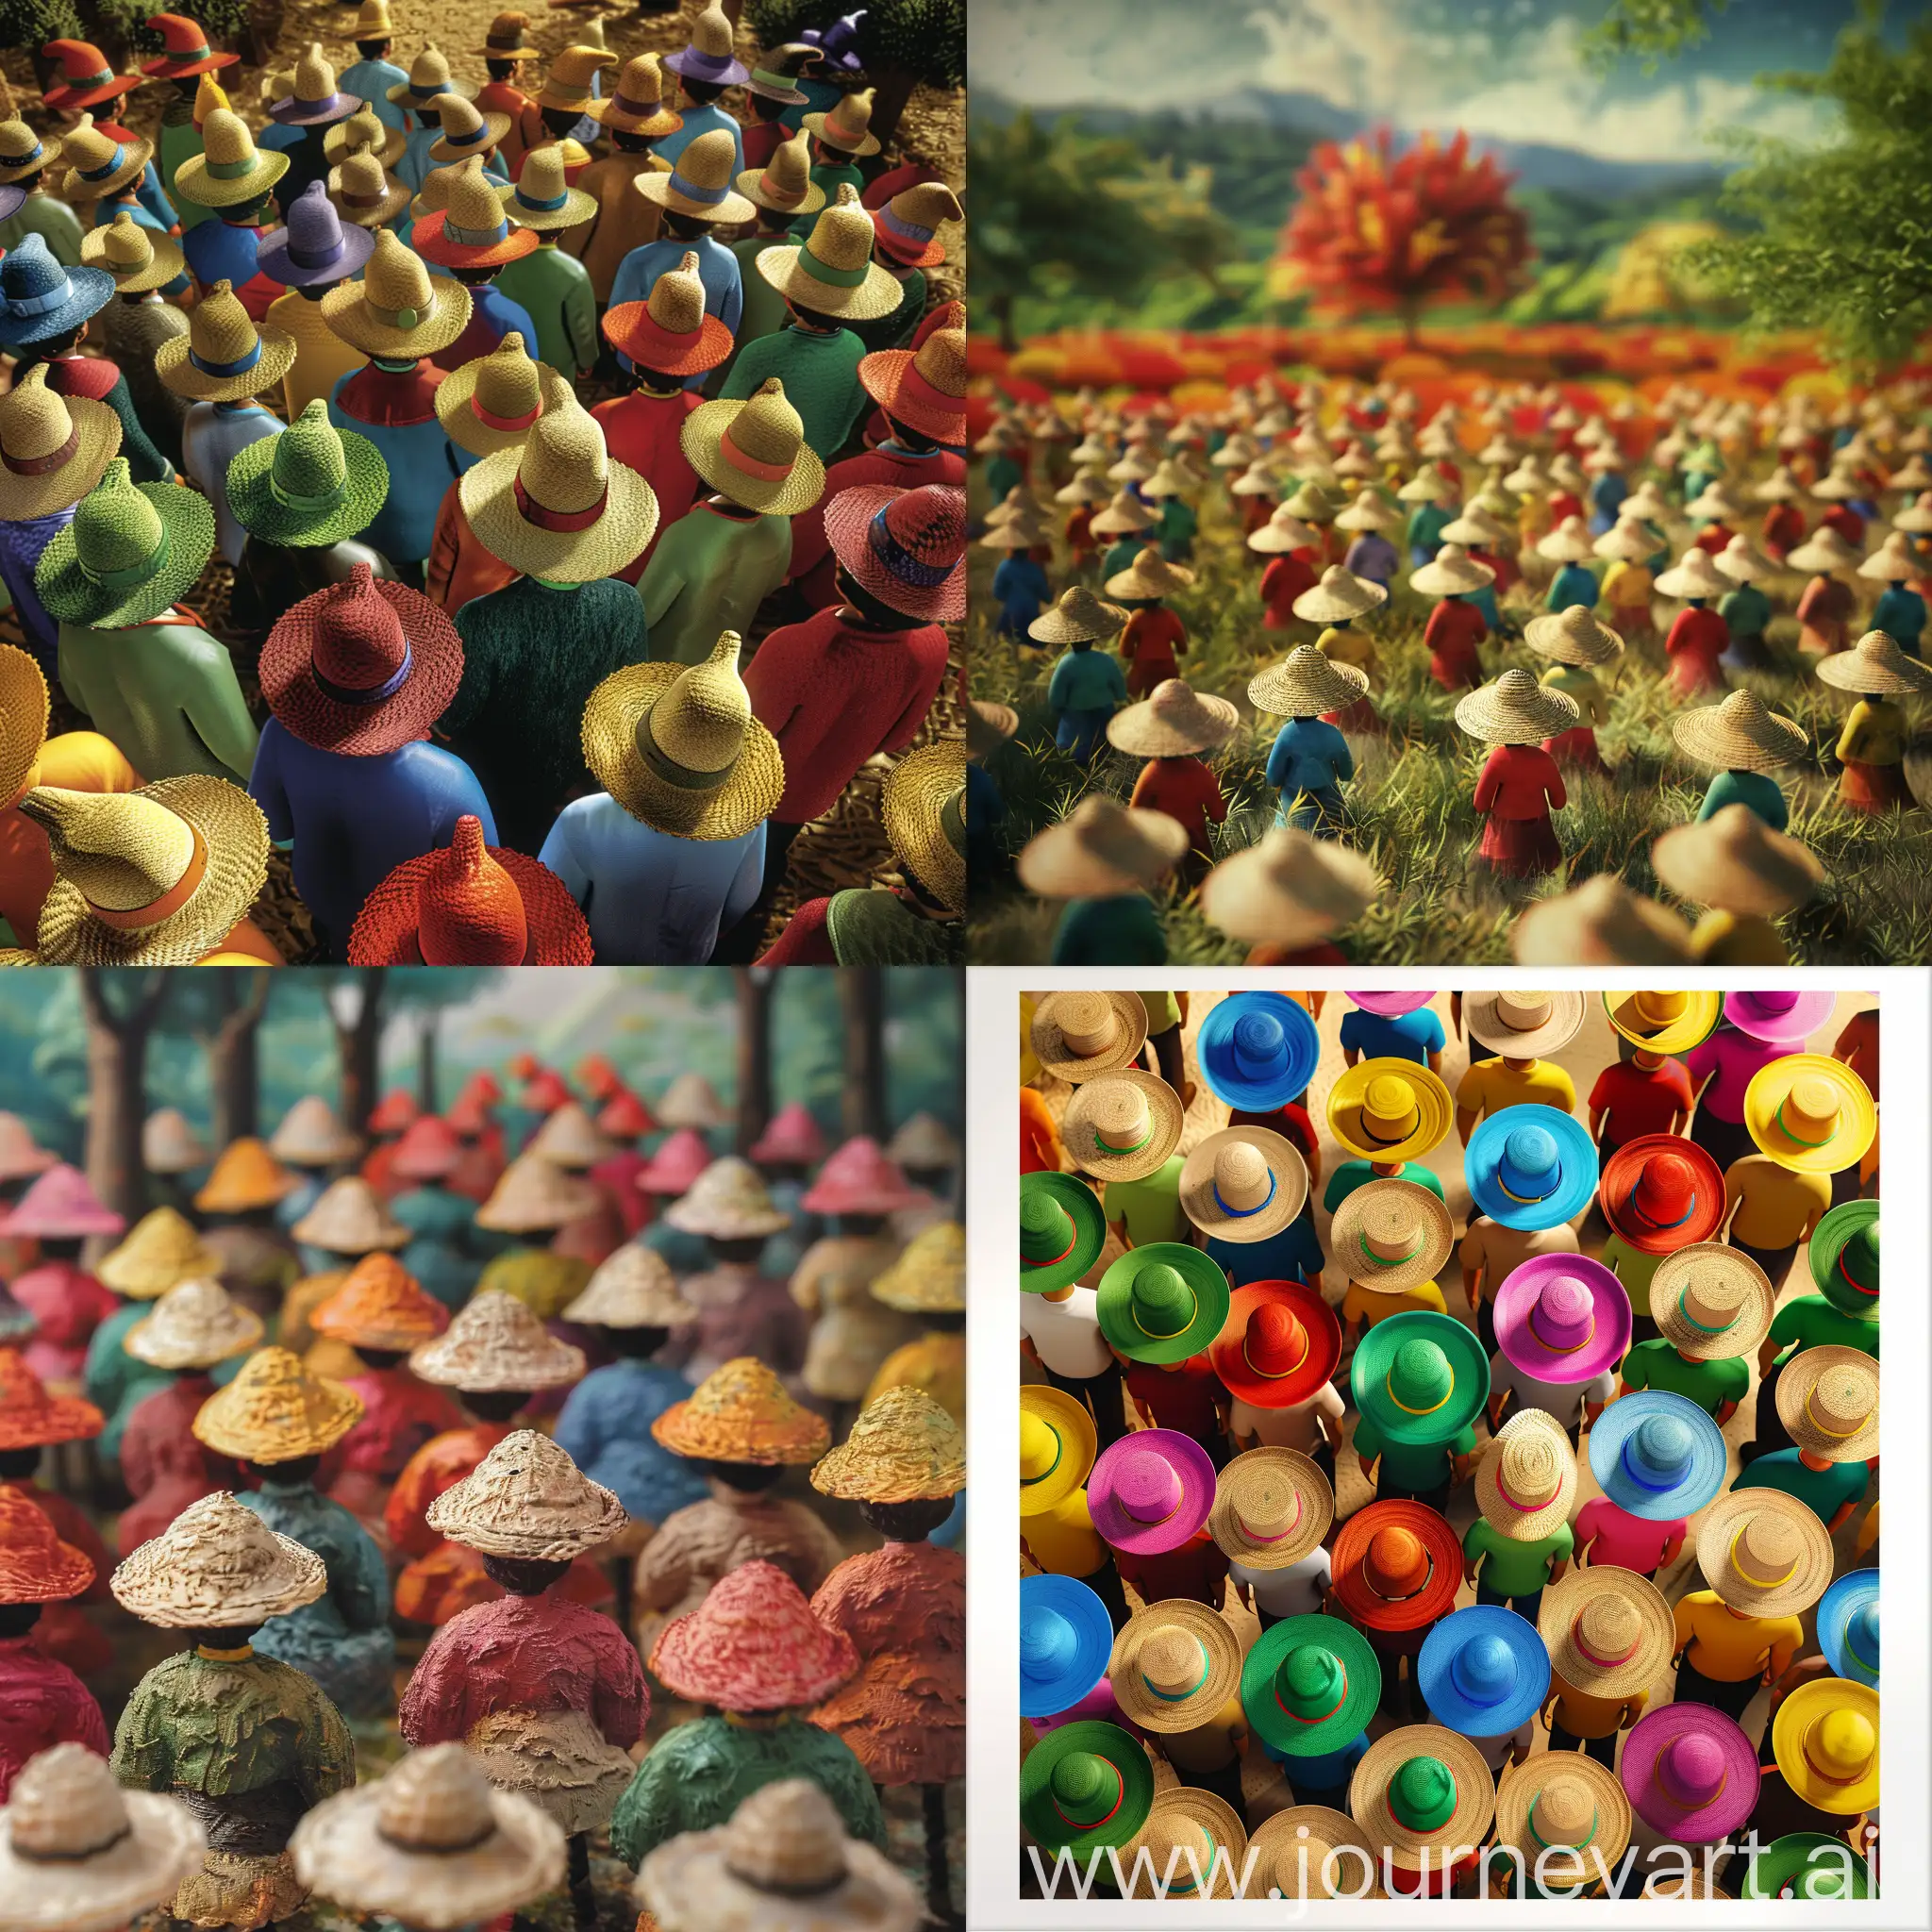 乡村的场景中，彩色圆圈汇聚的戴着草帽的人形态，海报16比9比例，竖版，3D风格，逼真画面